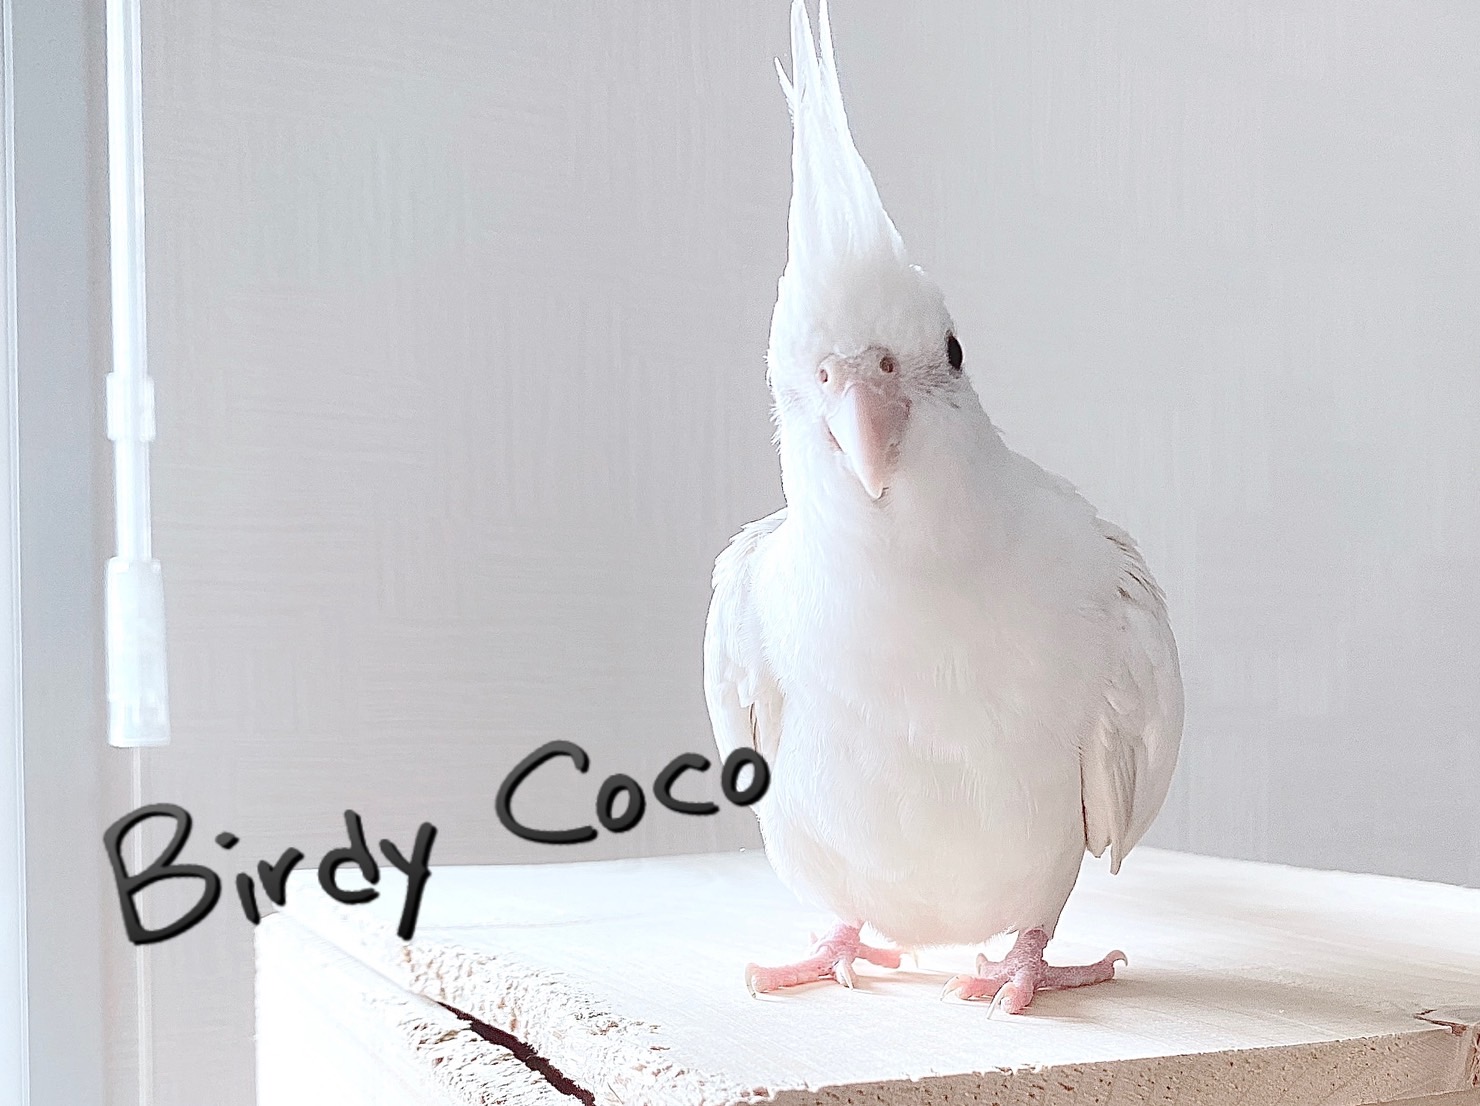 オカメインコにおすすめのケージ - Birdy Coco ブログ